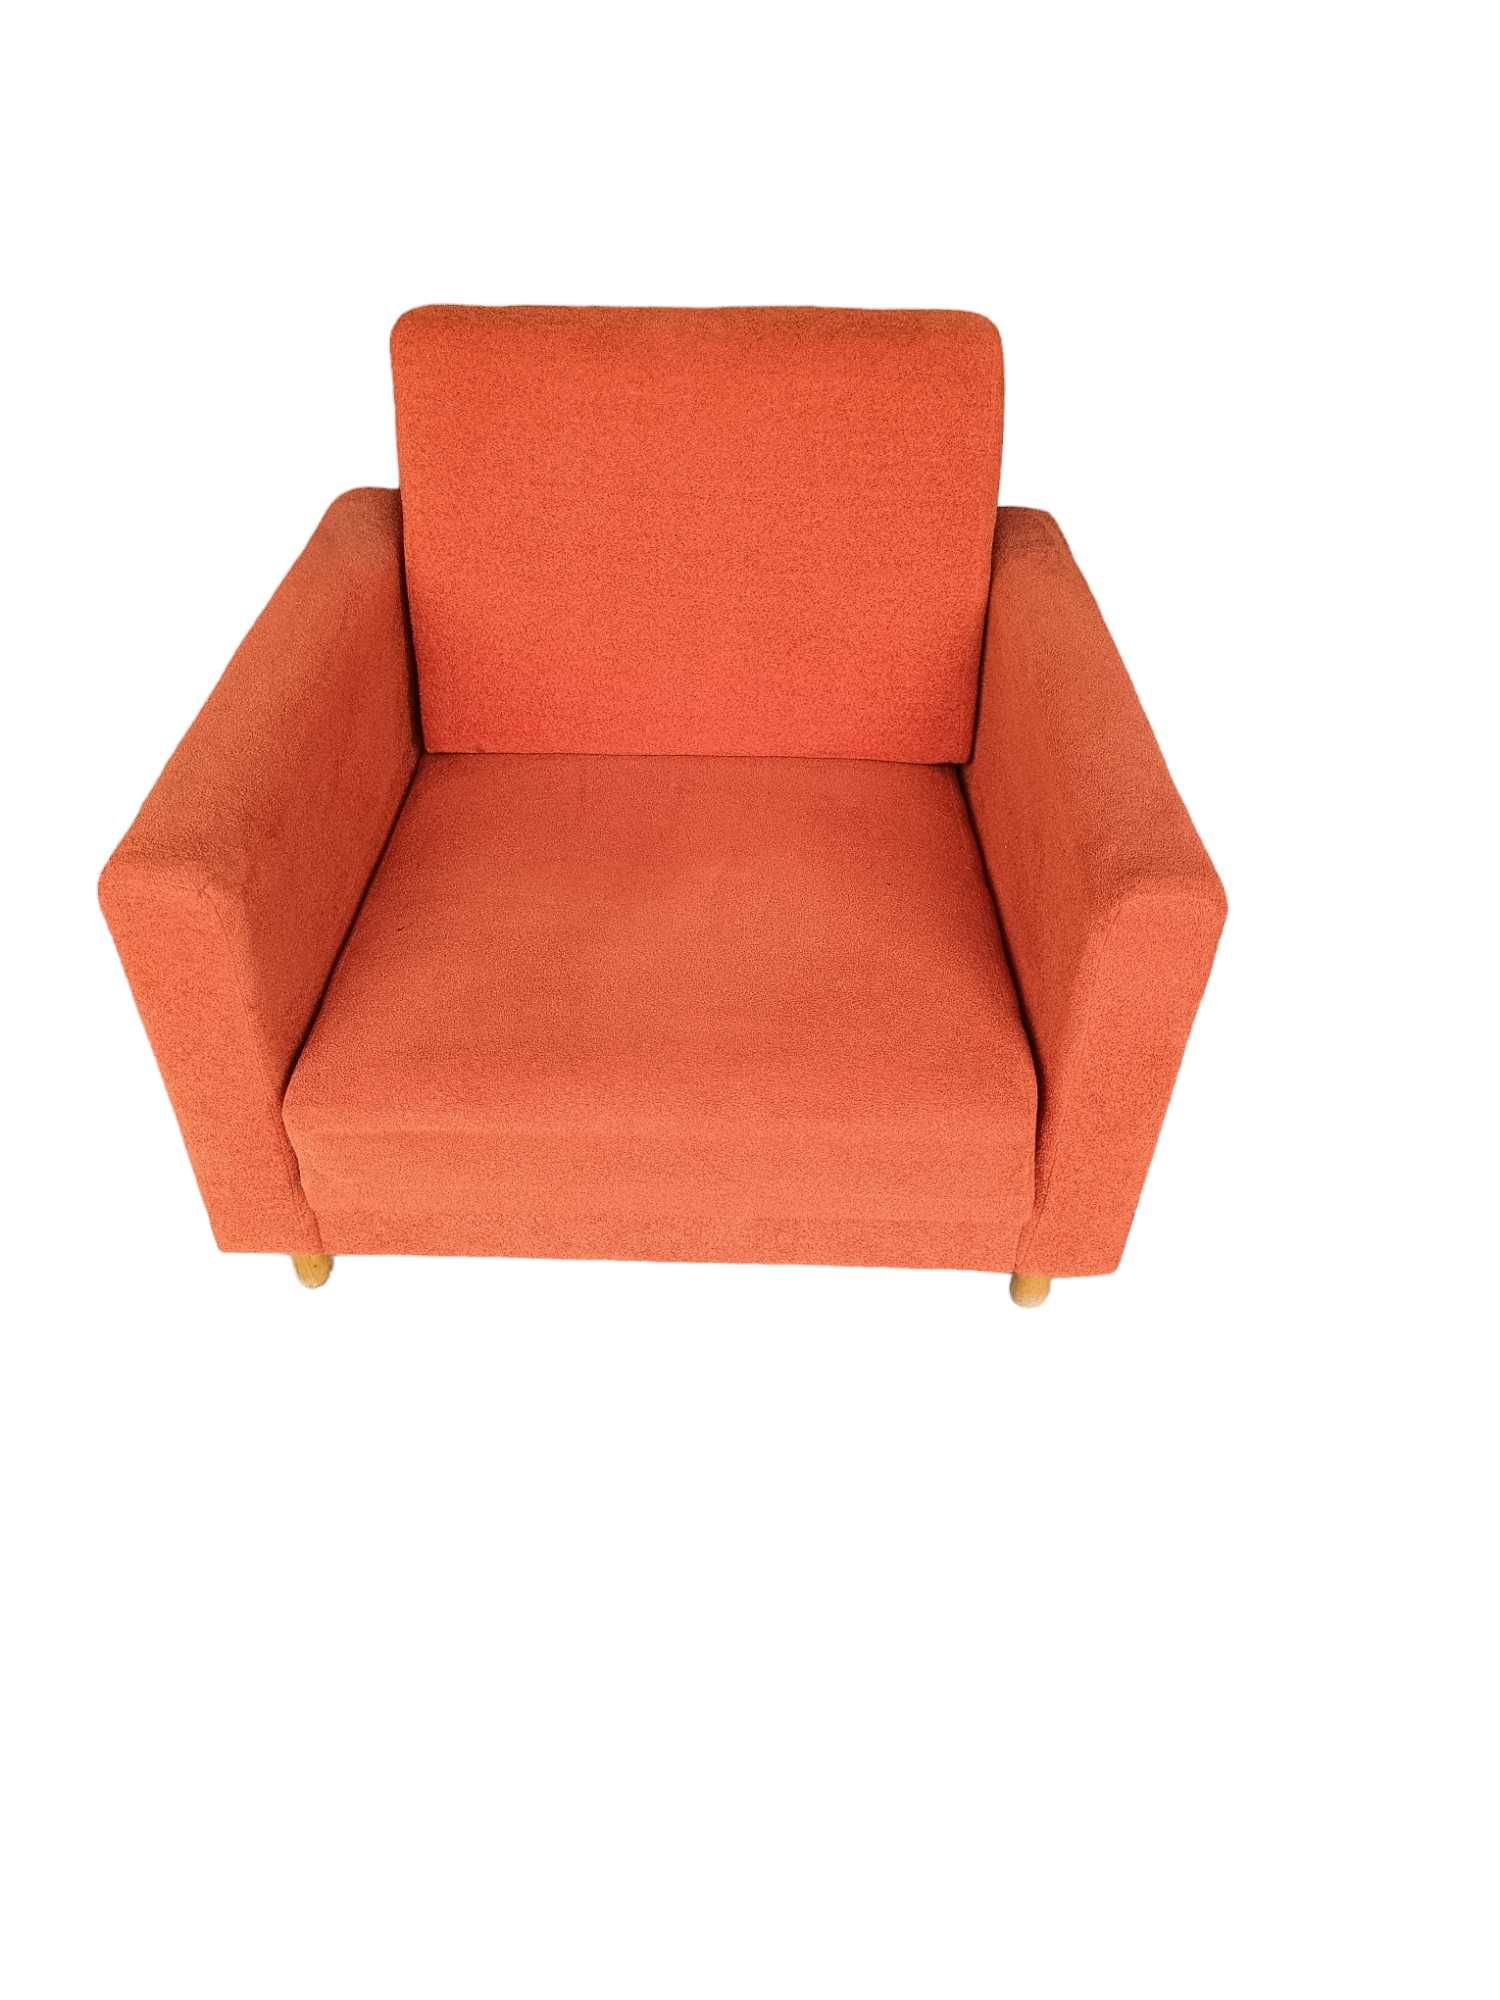 Fotel rozkładany do spania pomarańczowy retro + podnóżek